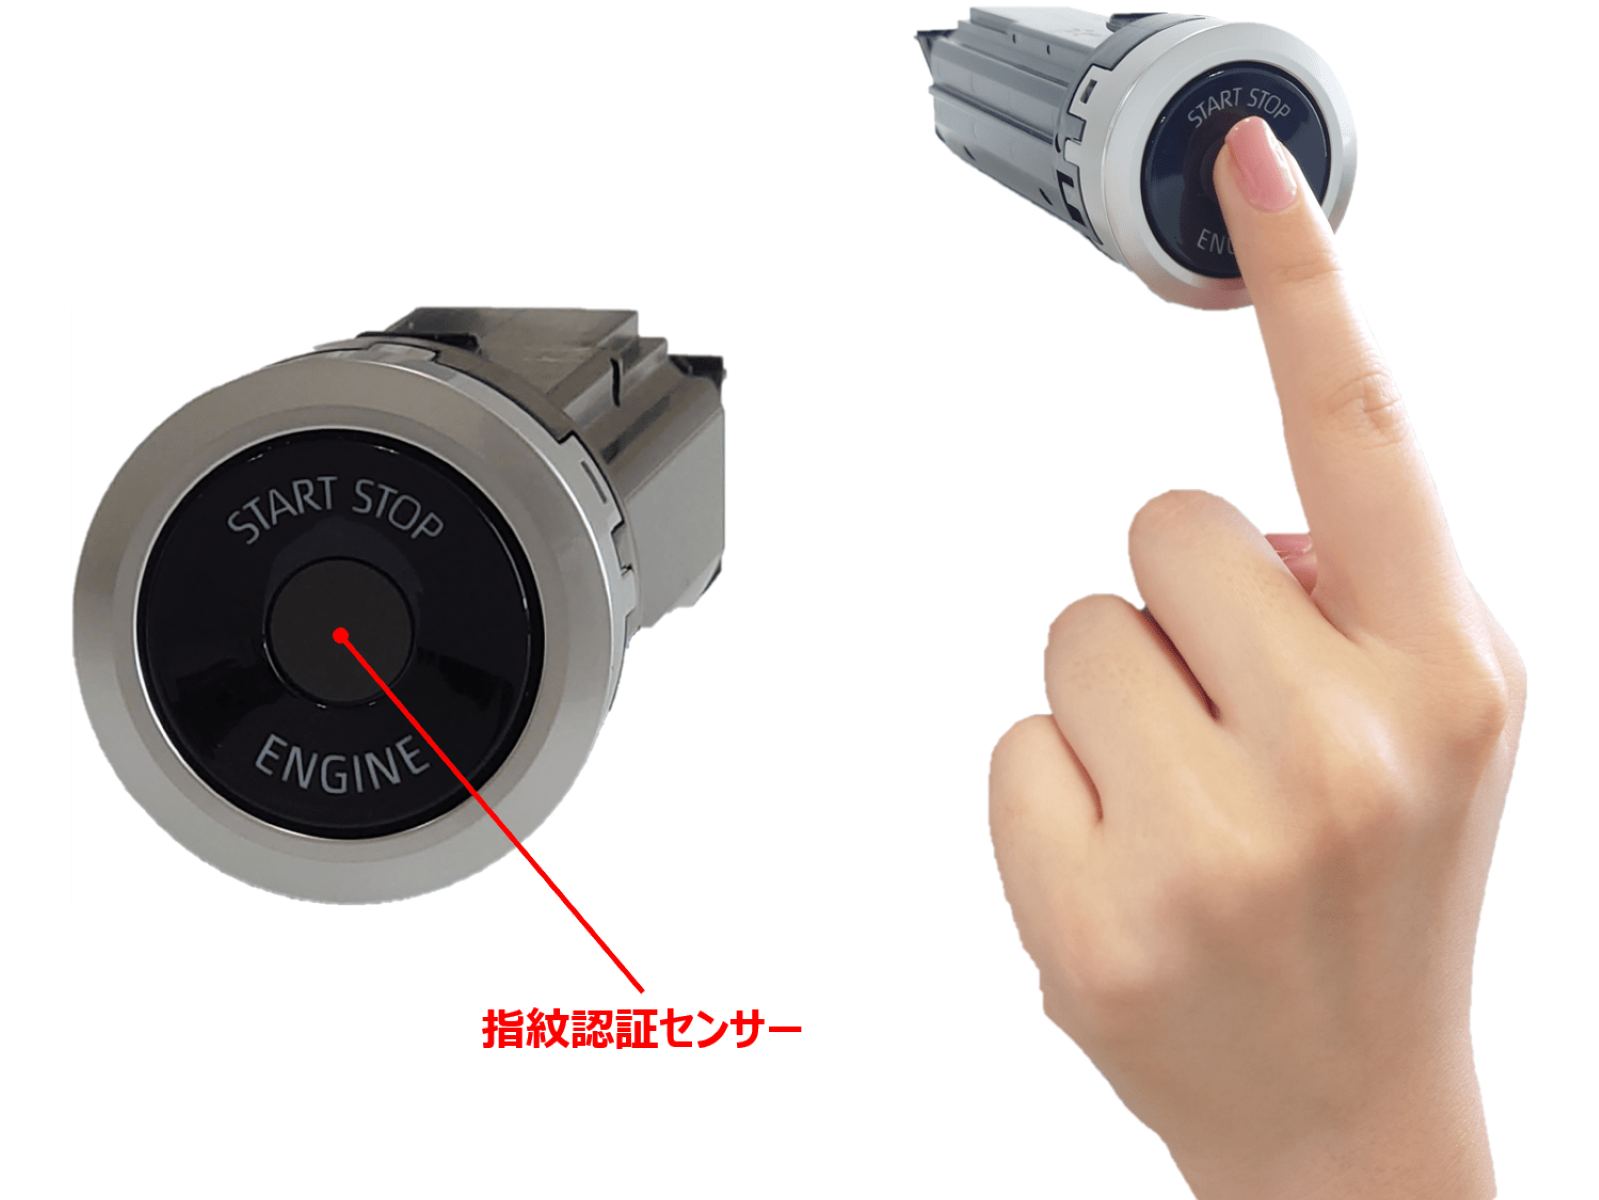 図1　東海理化が開発したスタートスイッチ 中央に指紋認証センサーを配置する。（出所：トヨタ自動車）